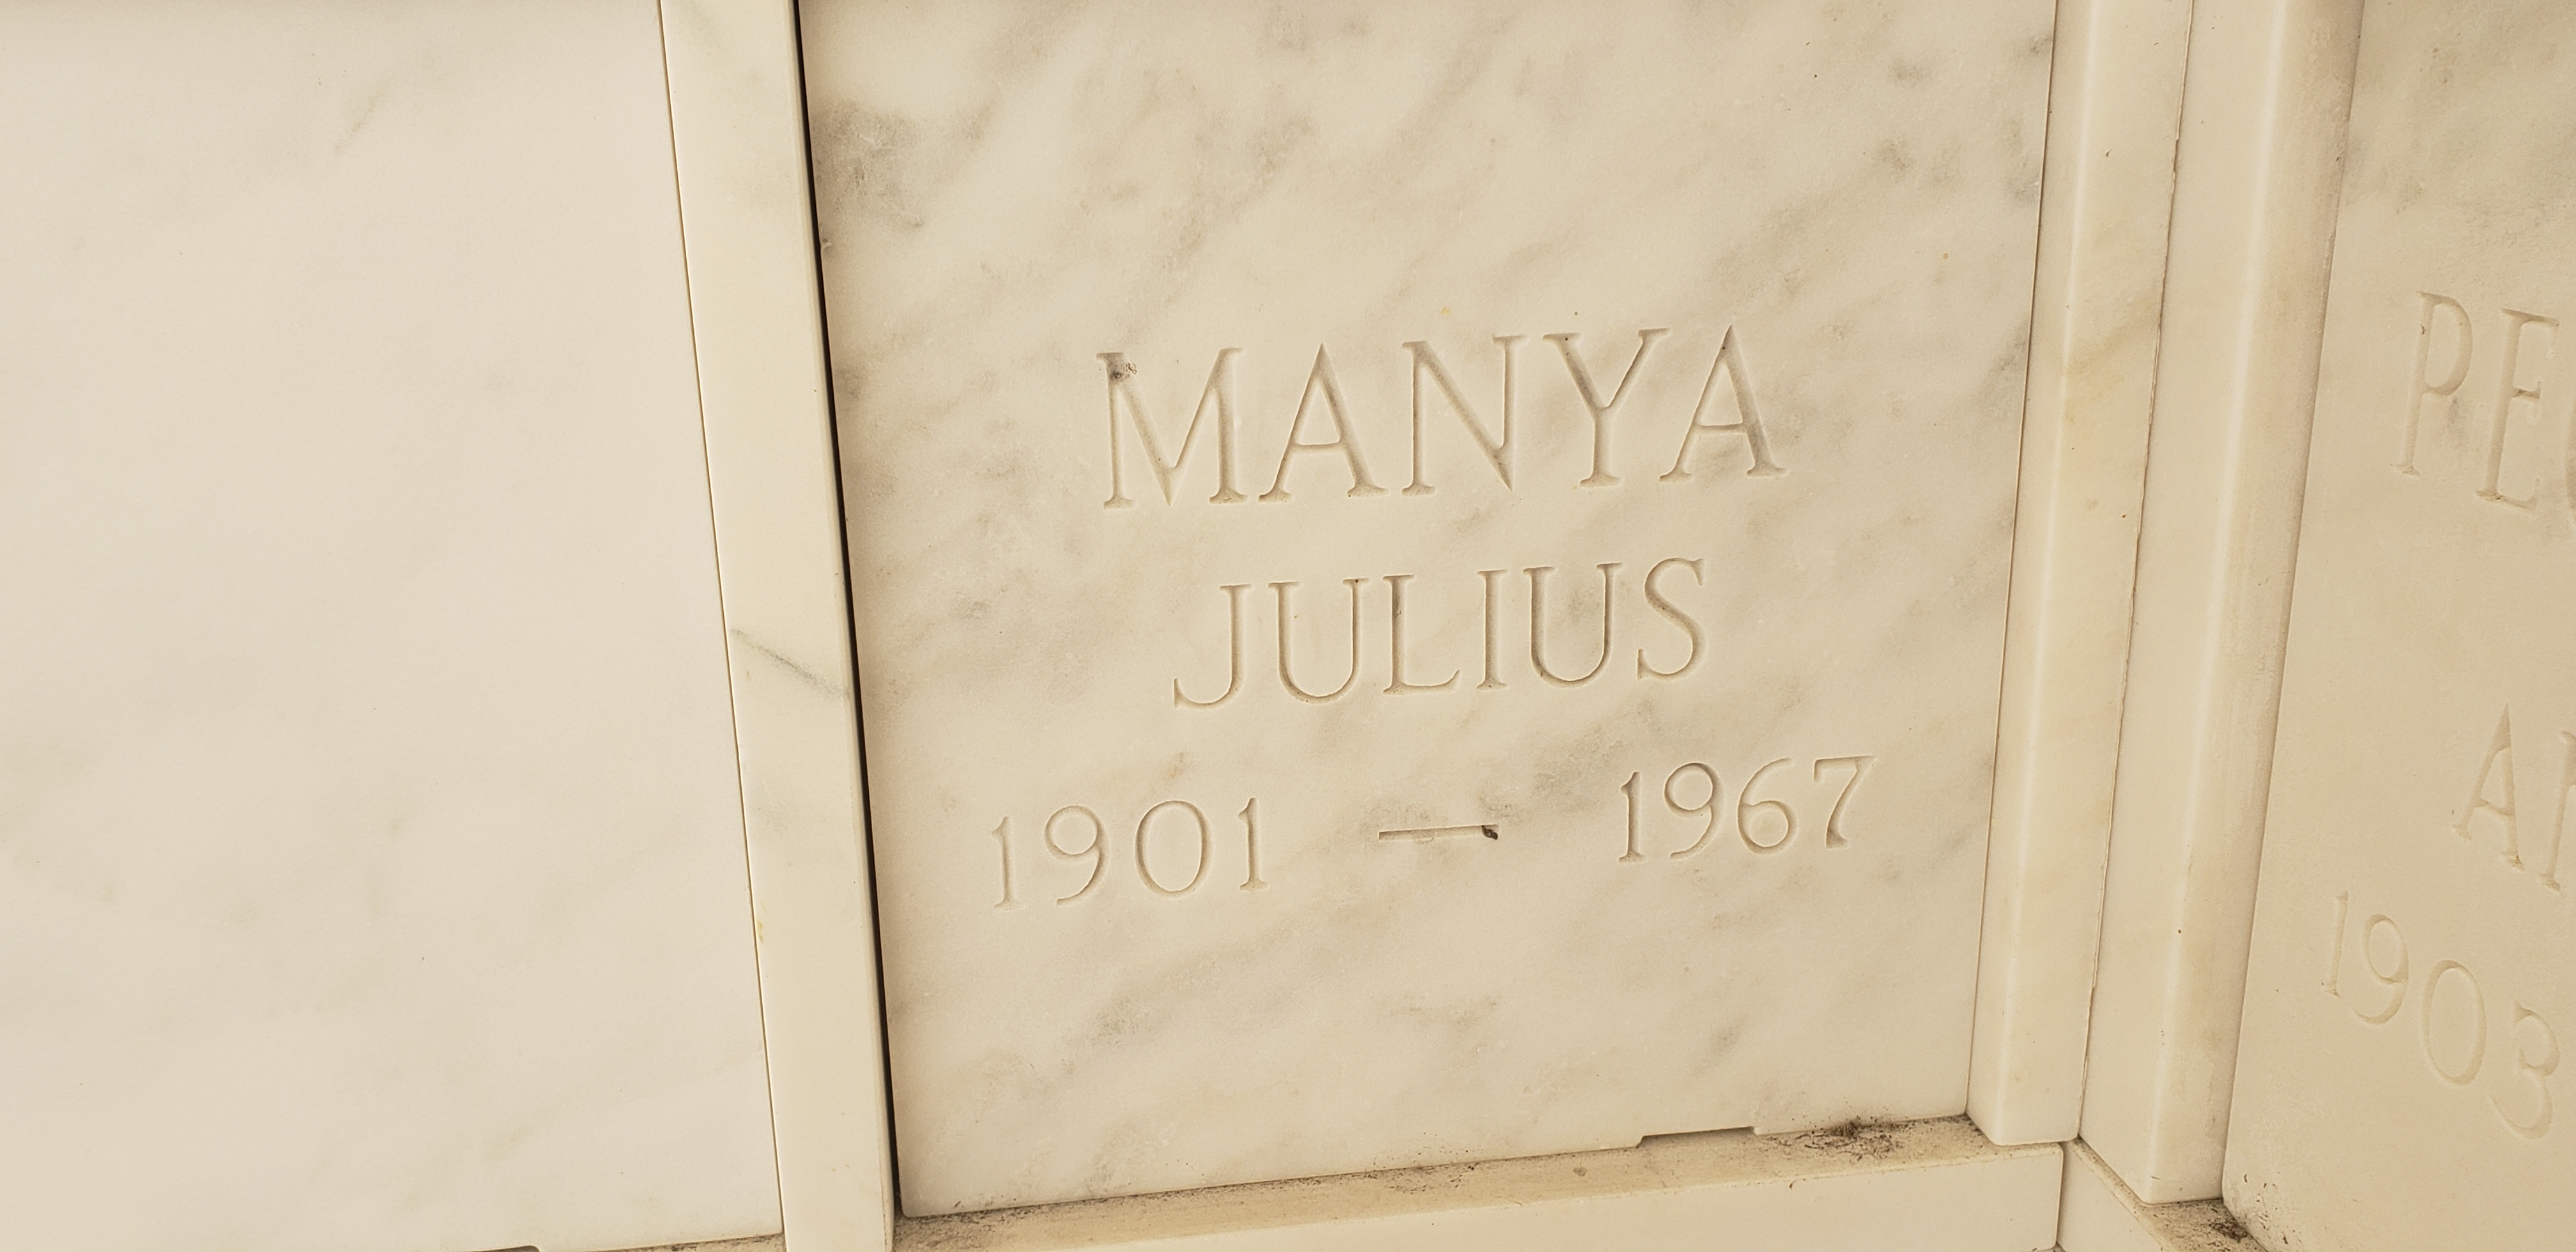 Julius Manya